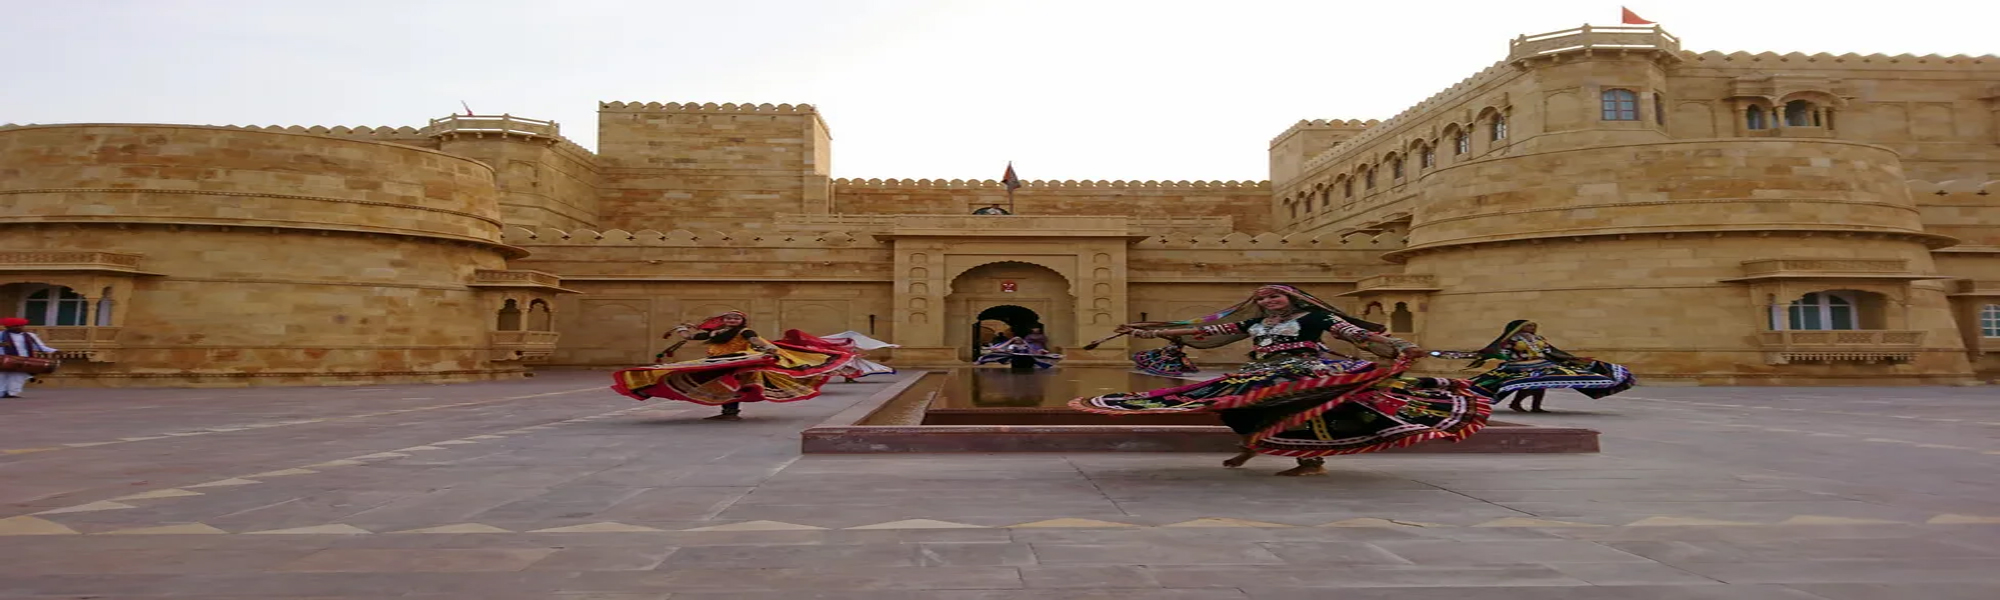 Desert Festival Budget Tour in Rajasthan 